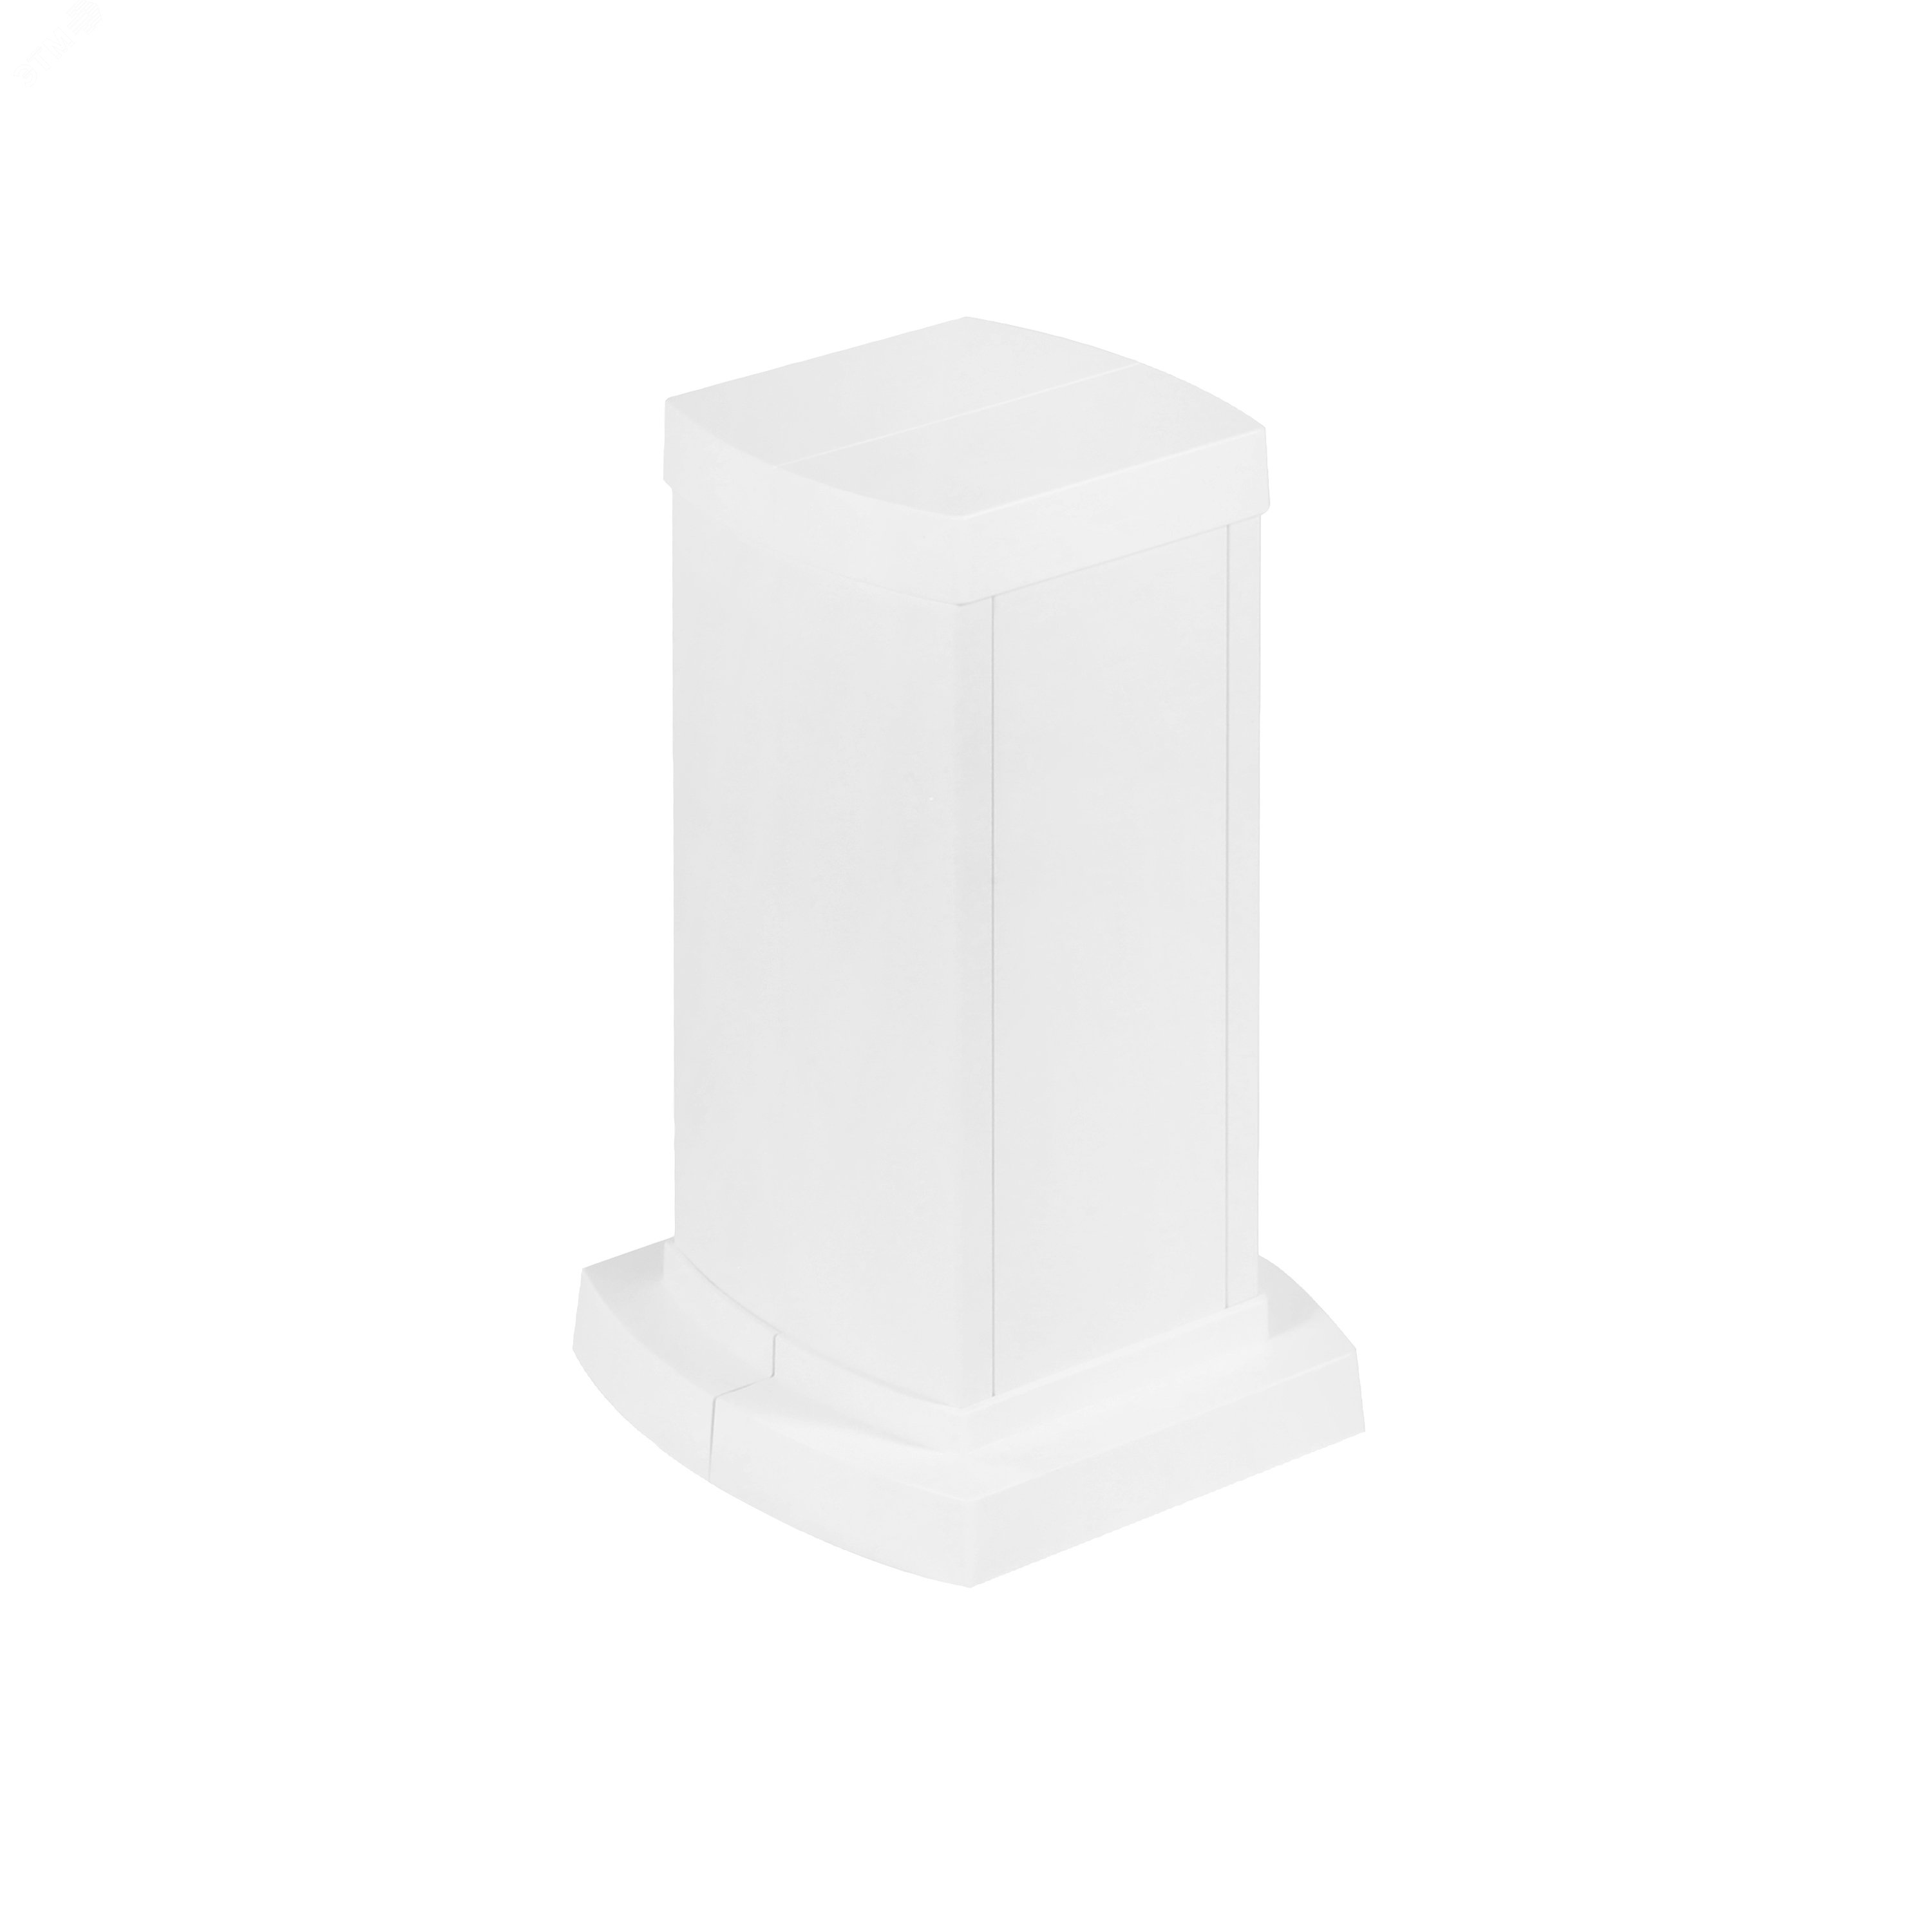 Универсальная мини-колонна алюминиевая с крышкой из алюминия 2 секции, высота 0,3 метра, цвет белый 653120 Legrand - превью 2